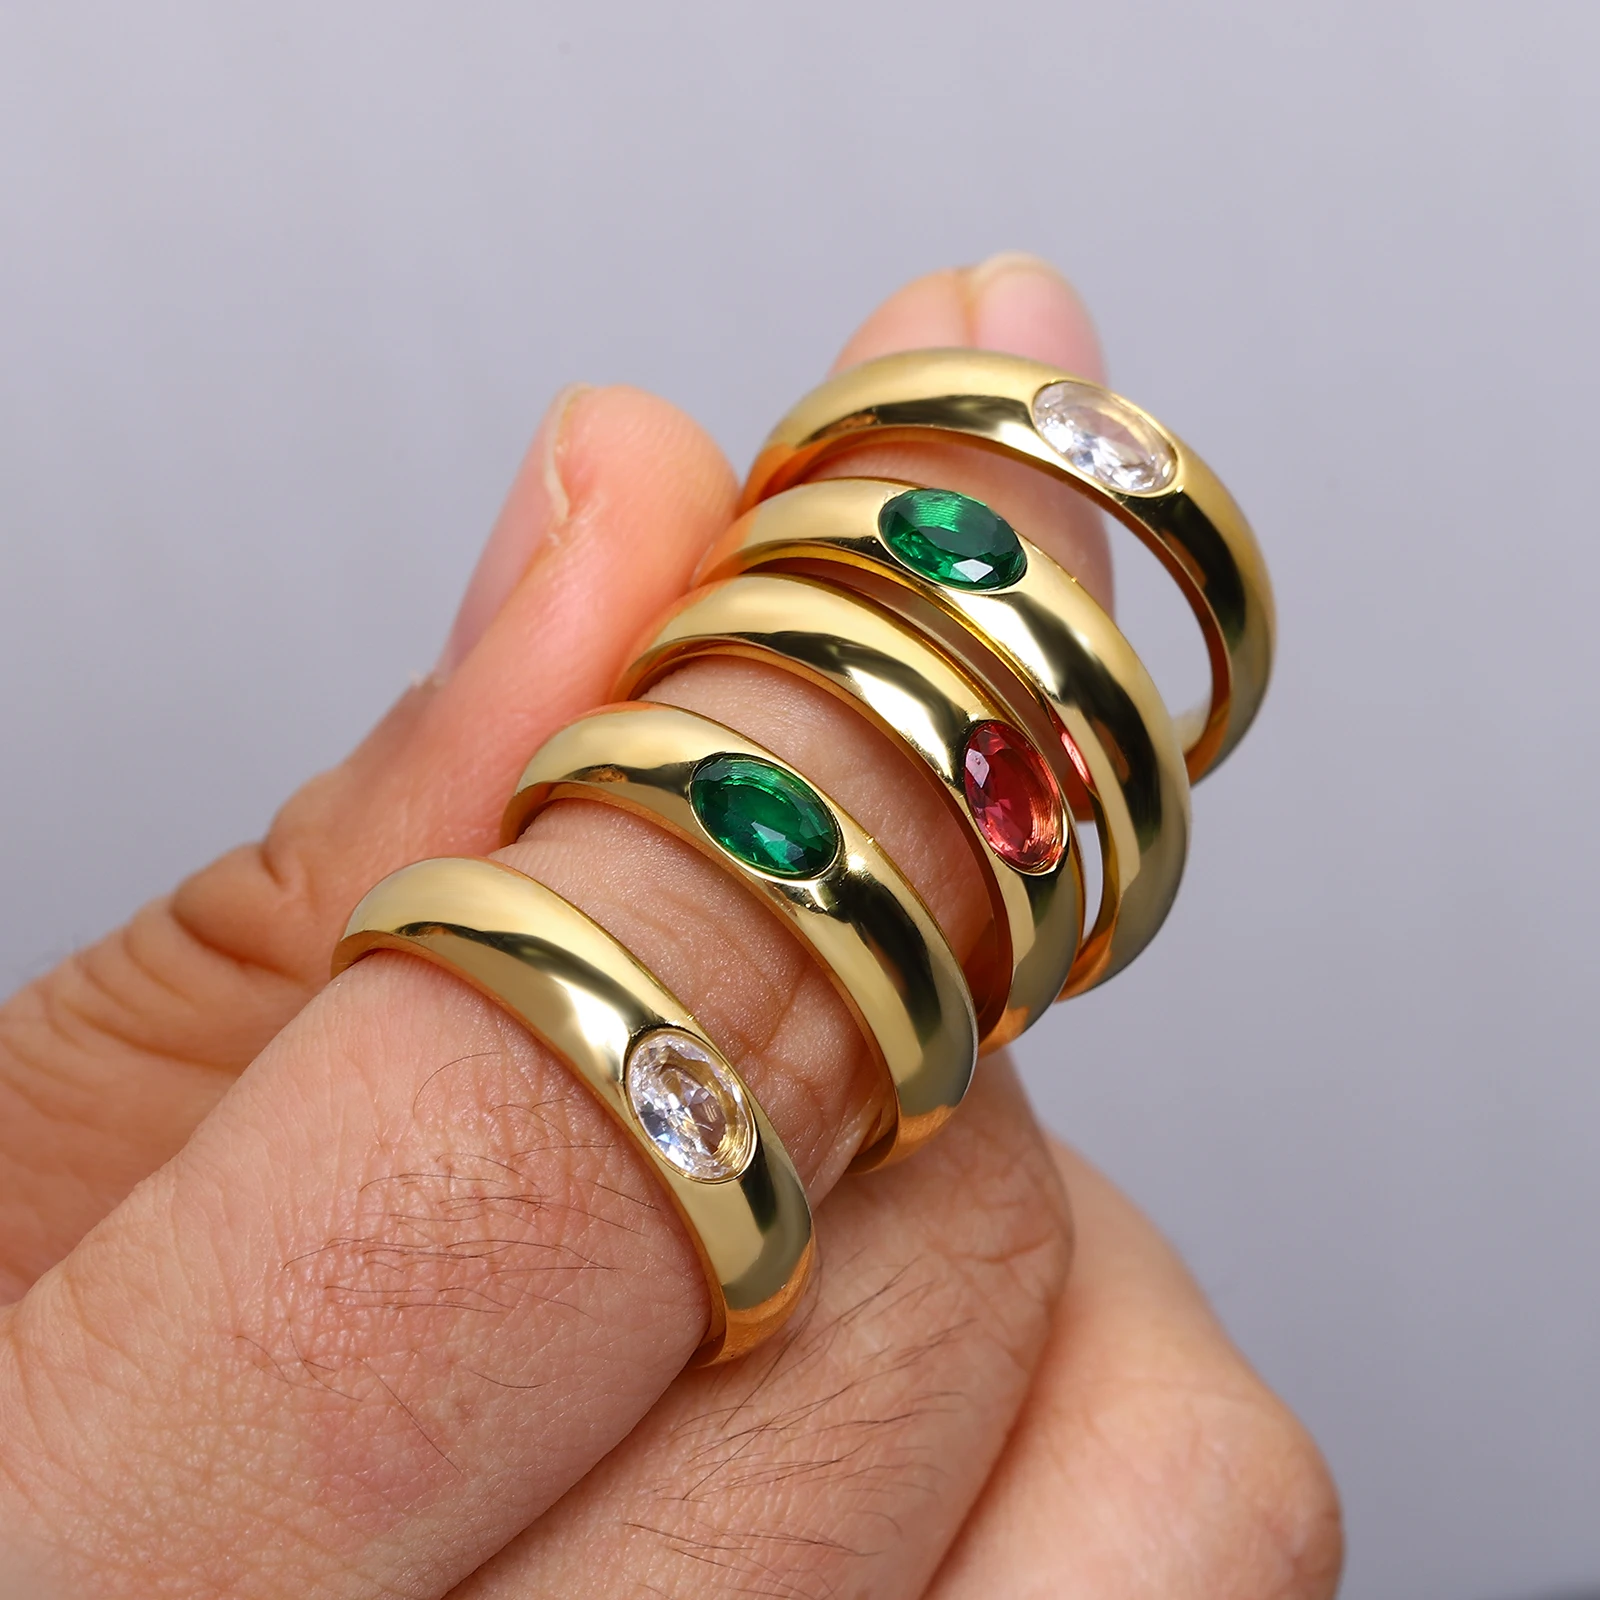 AENSOA, Новые Модные Шикарные Бело-зеленые Красочные кольца из нержавеющей стали со стразами для женщин, Очаровательные Уникальные украшения для безымянных пальцев